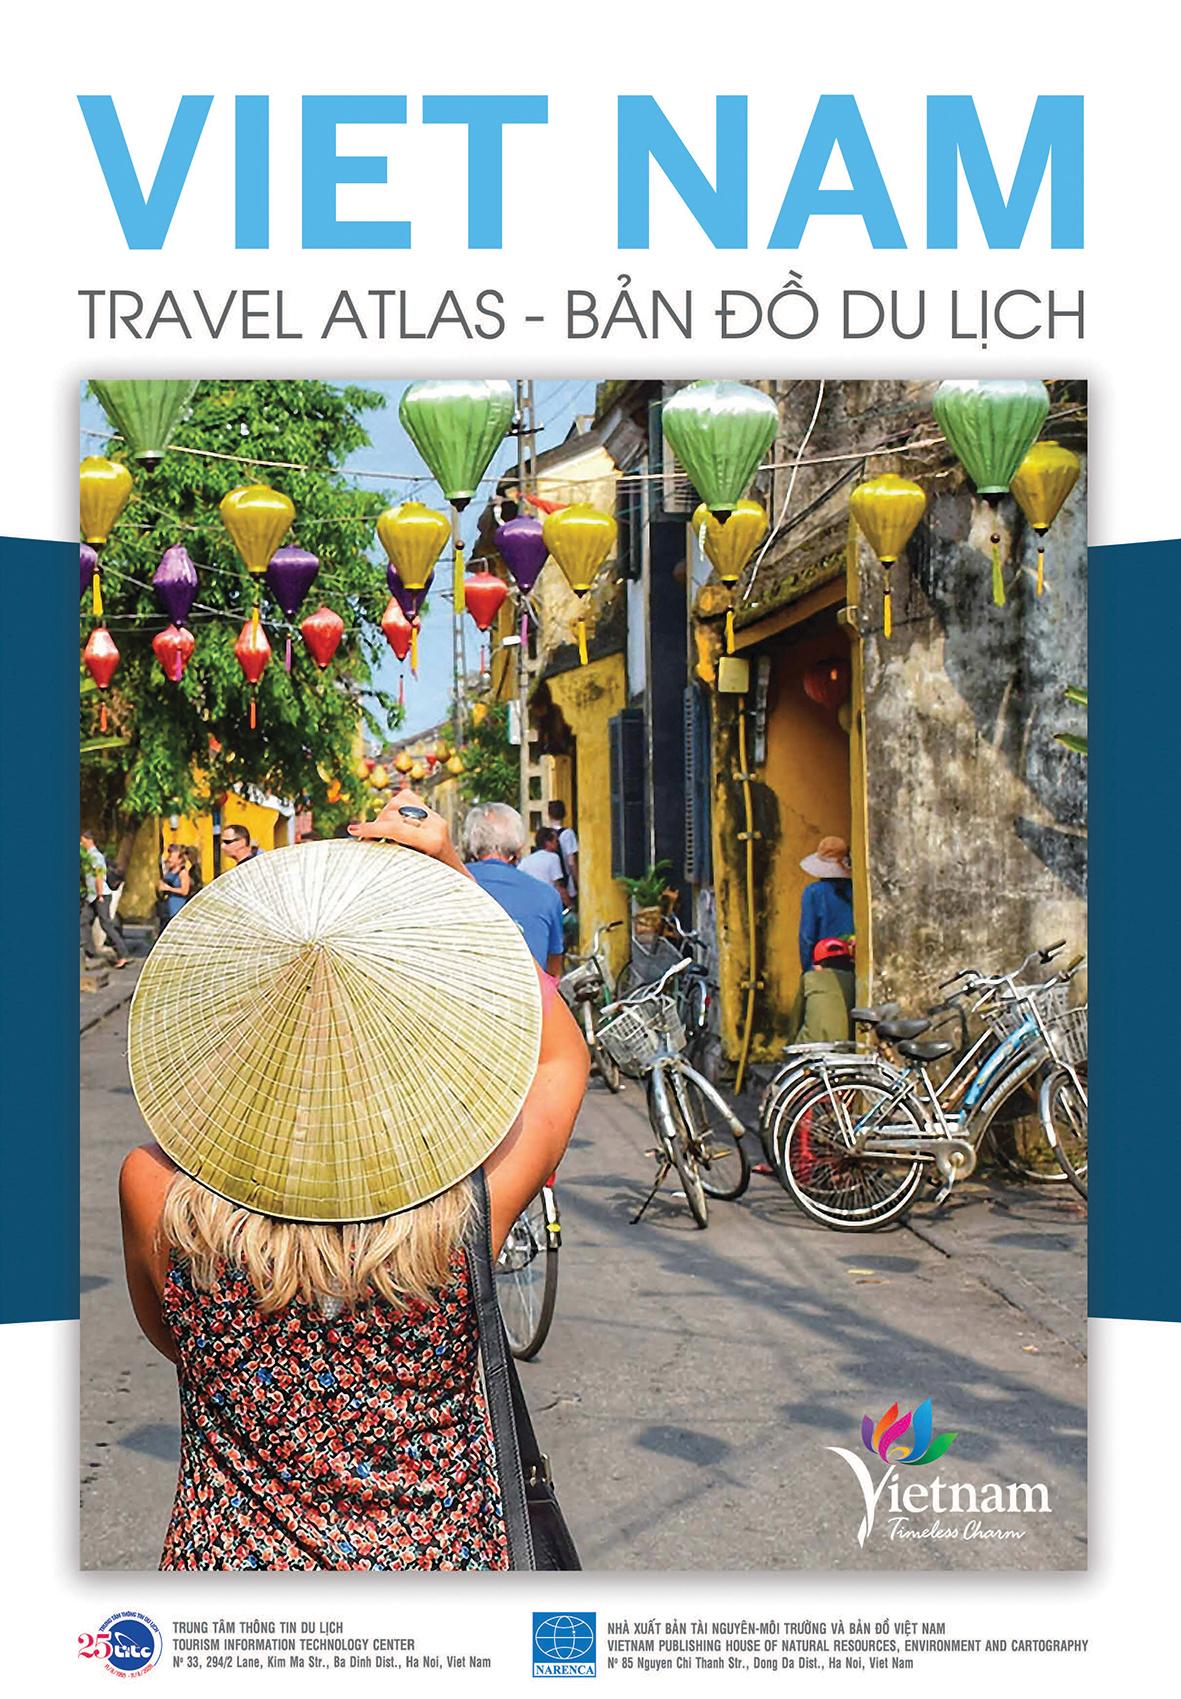 Bản đồ du lịch Việt Nam 2020 là công cụ tuyệt vời để lên kế hoạch cho chuyến đi của bạn. Vào trang web để thấy những địa điểm tuyệt vời và hấp dẫn trên khắp Việt Nam.